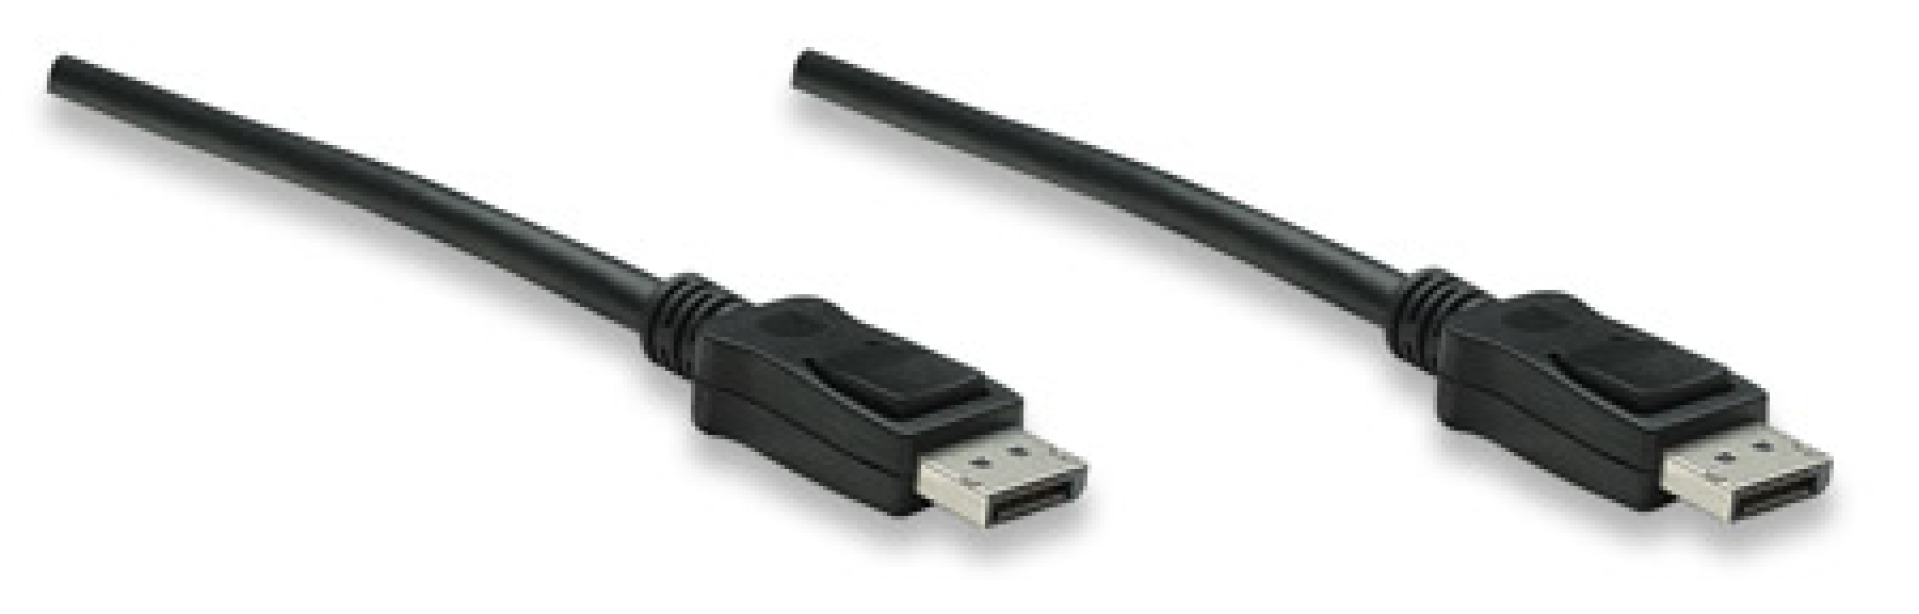 DisplayPort 1.2 Audio/Video Anschlusskabel, schwarz, 1 m